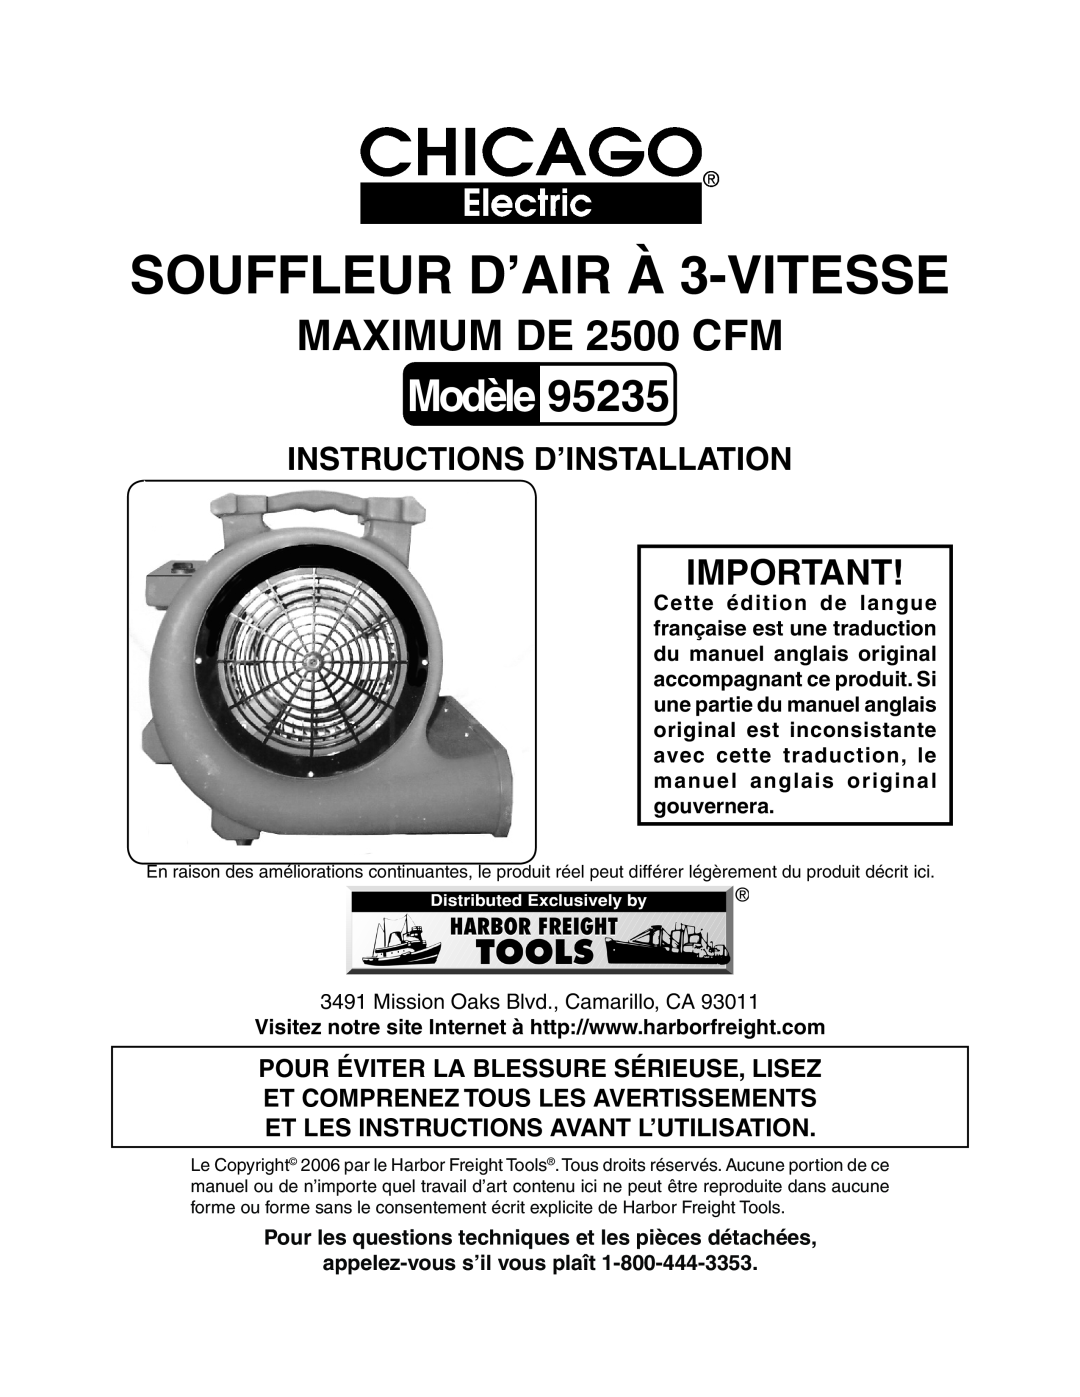 Chicago Electric 95235 manual Modèle, MAXIMUM DE 2500 CFM, Instructions D’Installation, SOUFFLEUR D’AIR À 3-VITESSE 